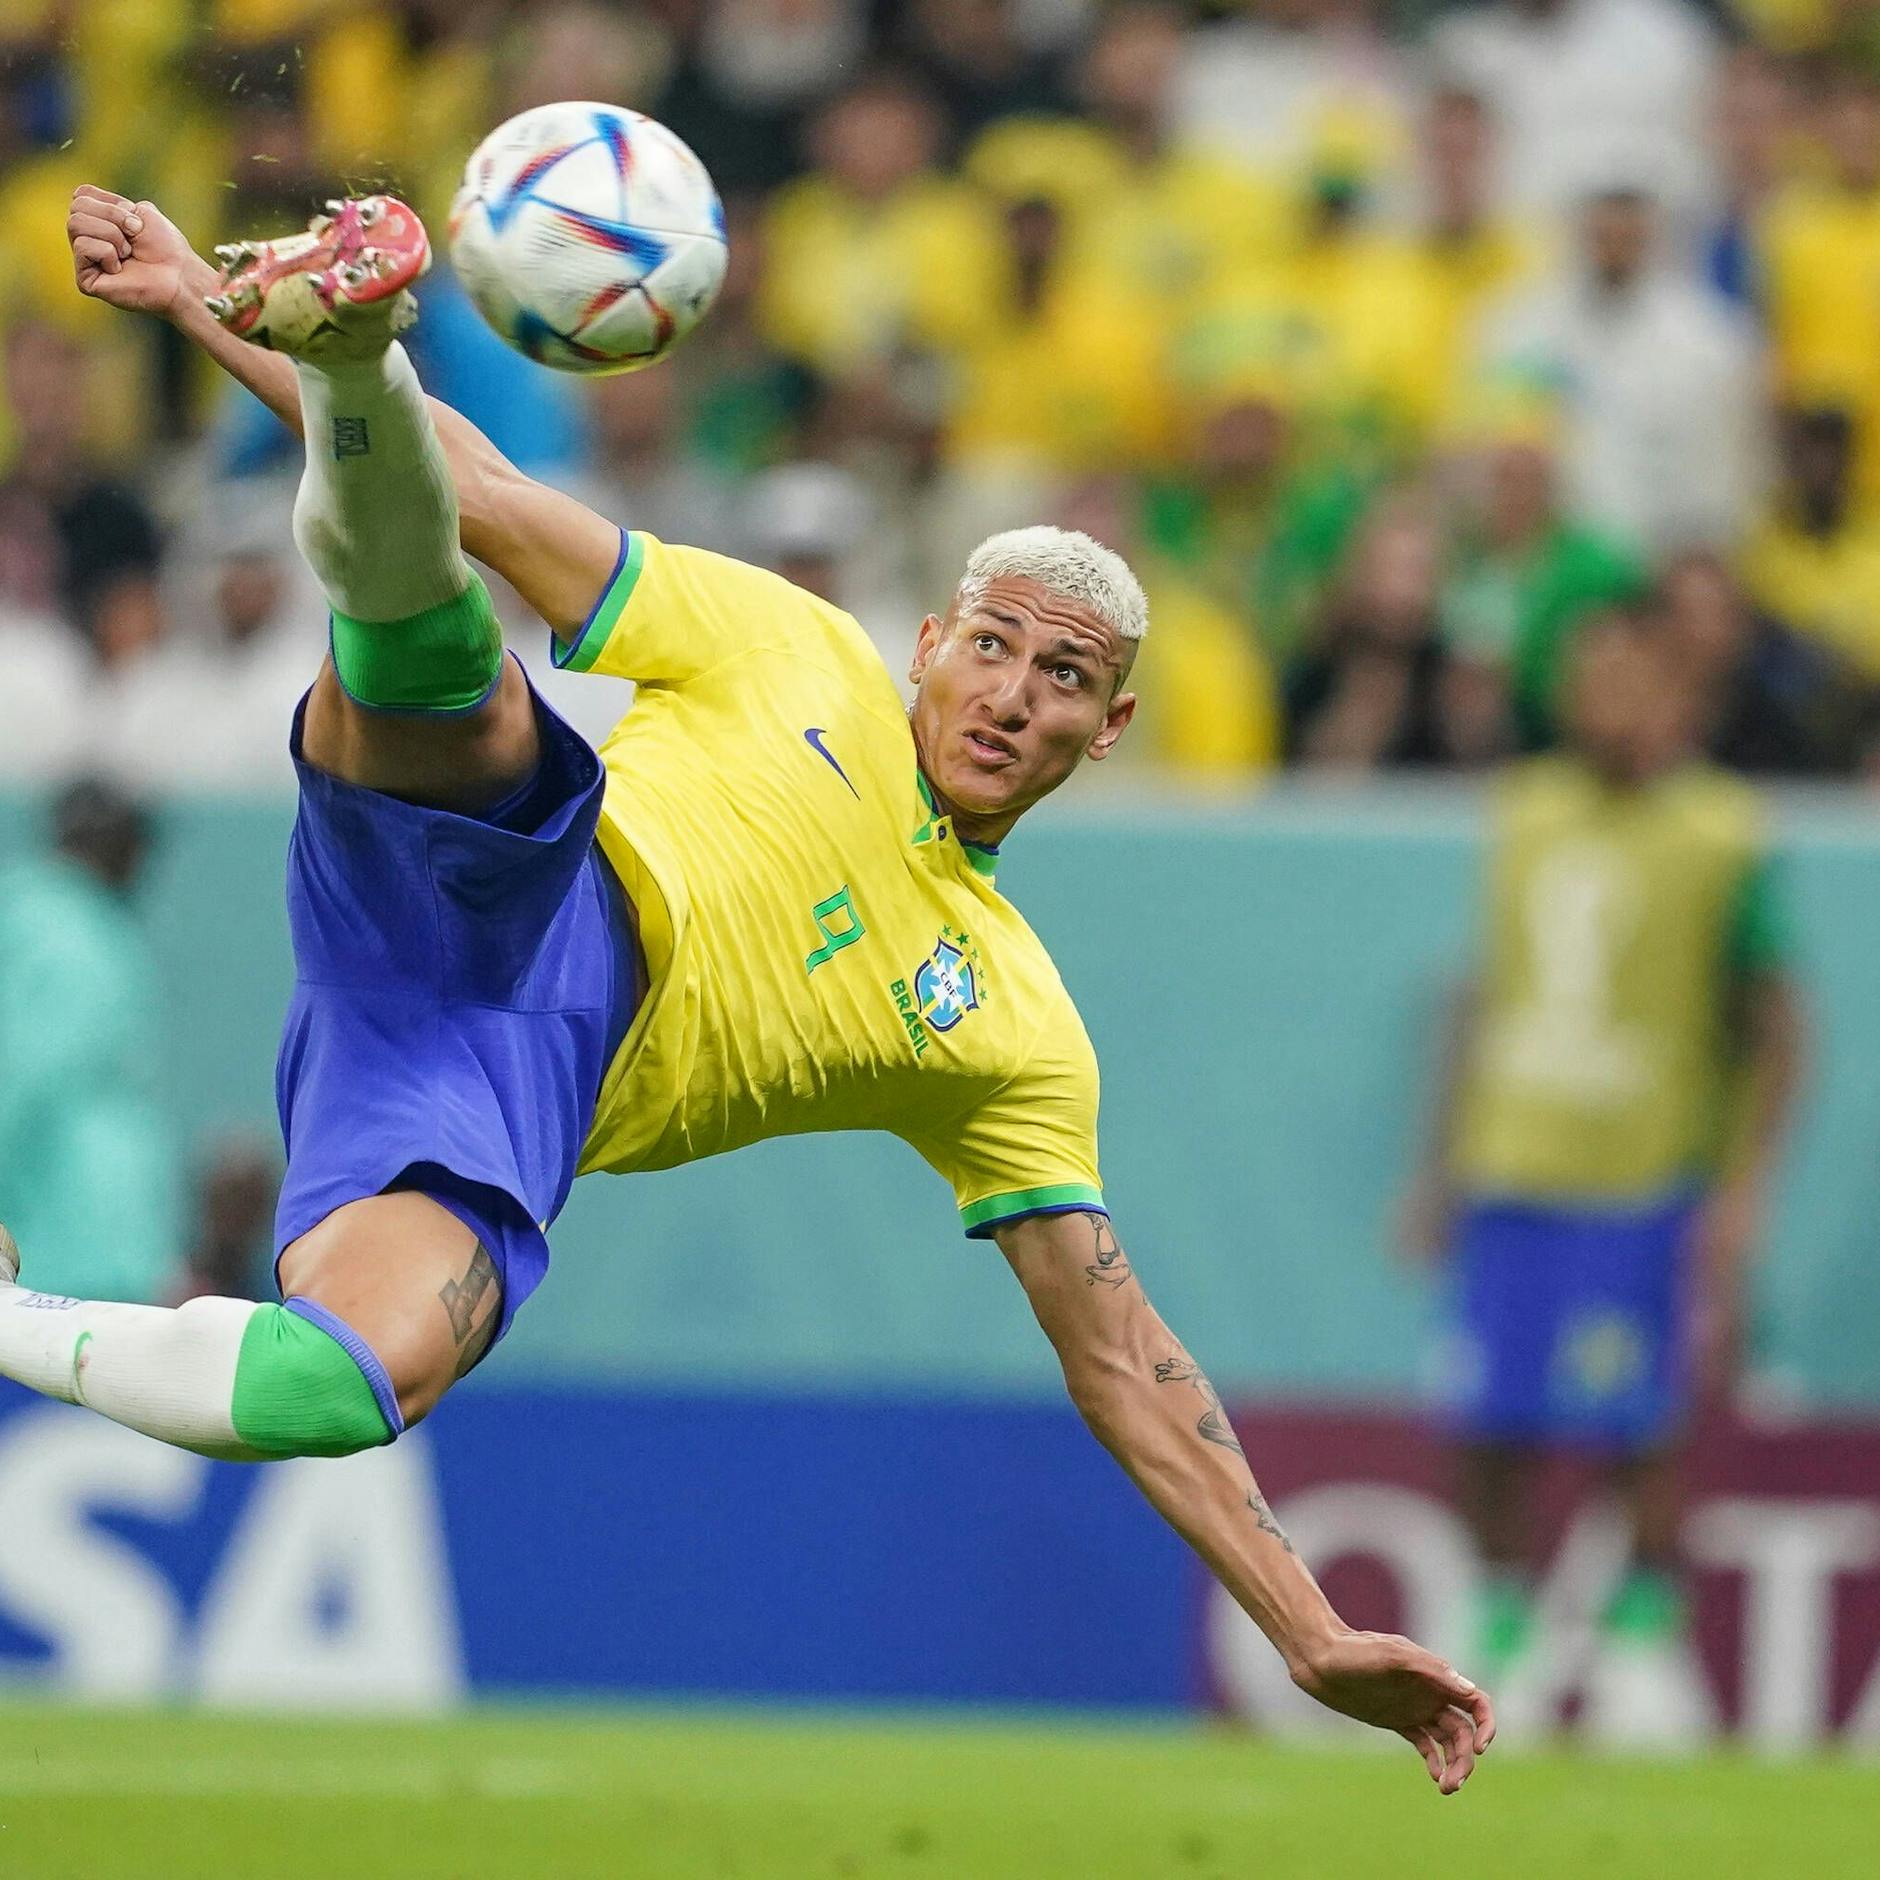 Image - Richarlison rockt mit Traumtor und bisher spektakulärstem Treffer dieser WM